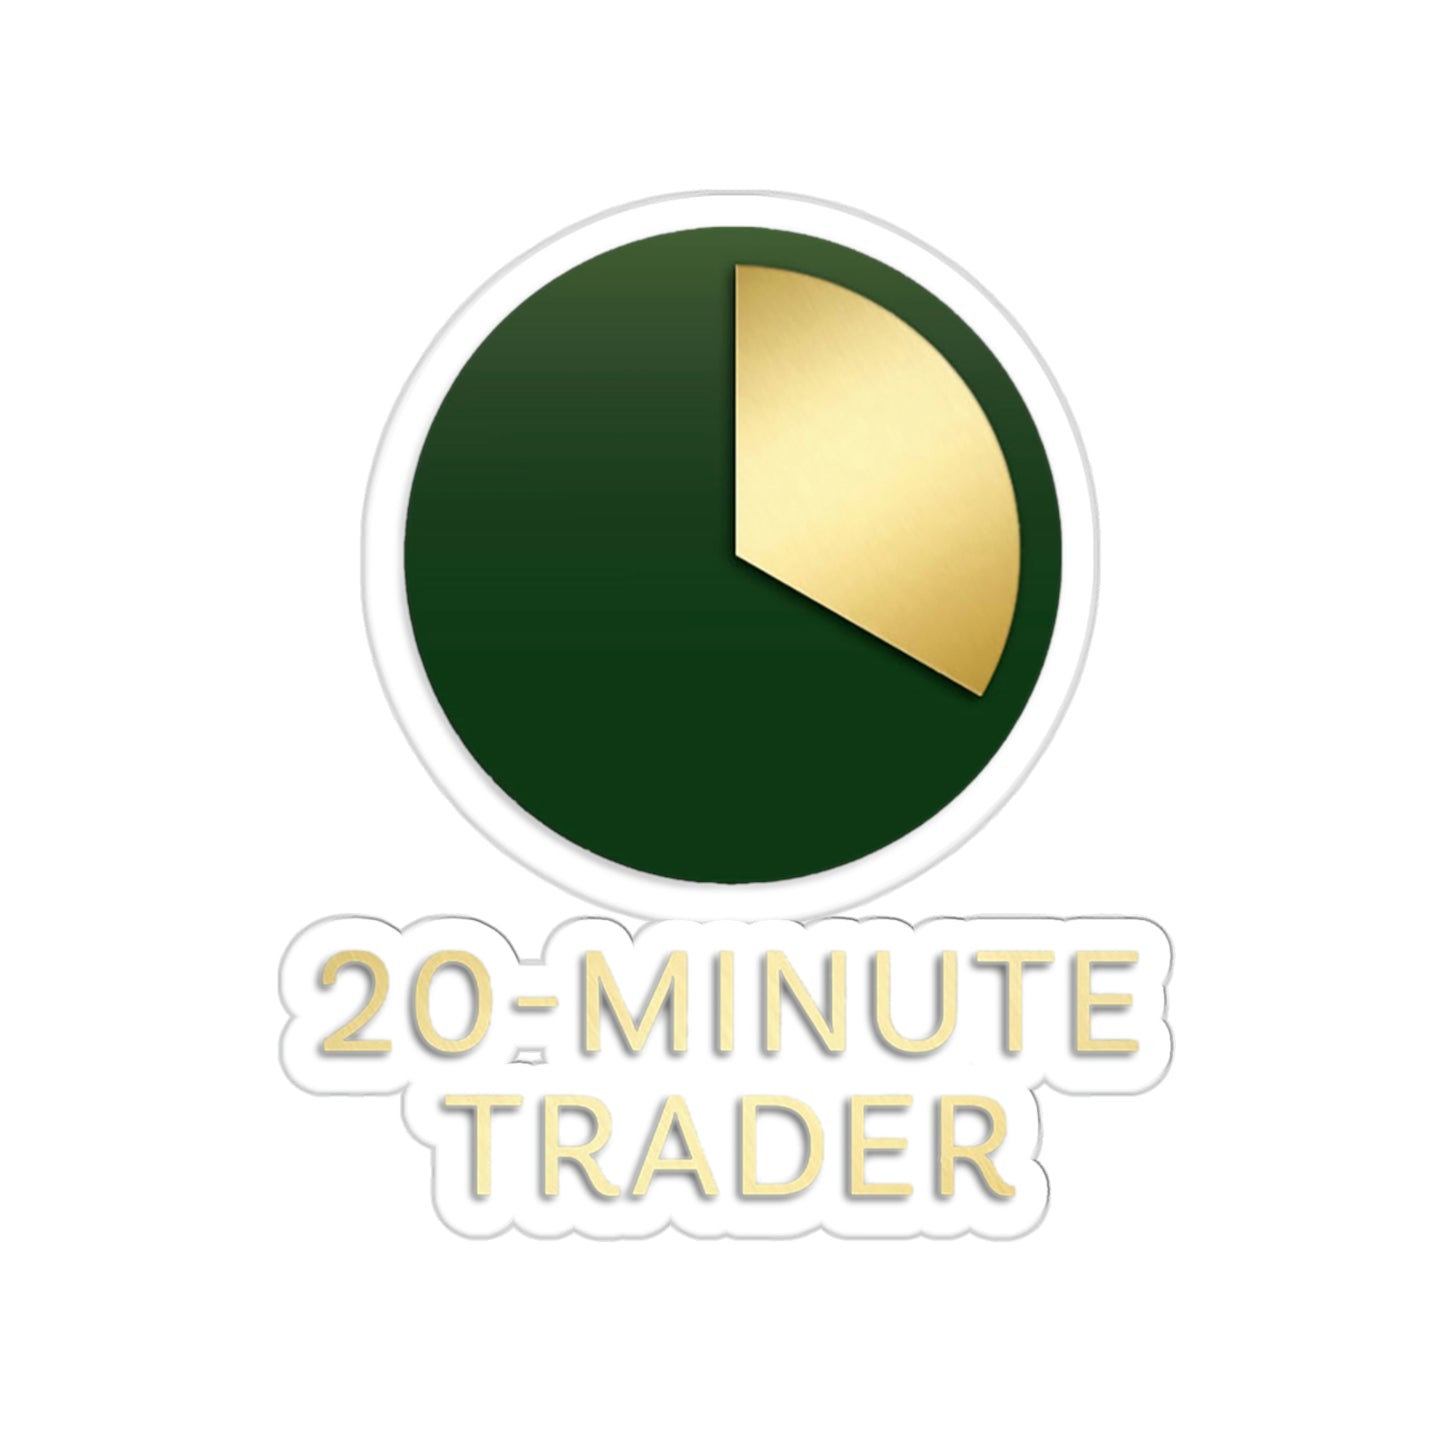 20-Minute Trader® Sticker